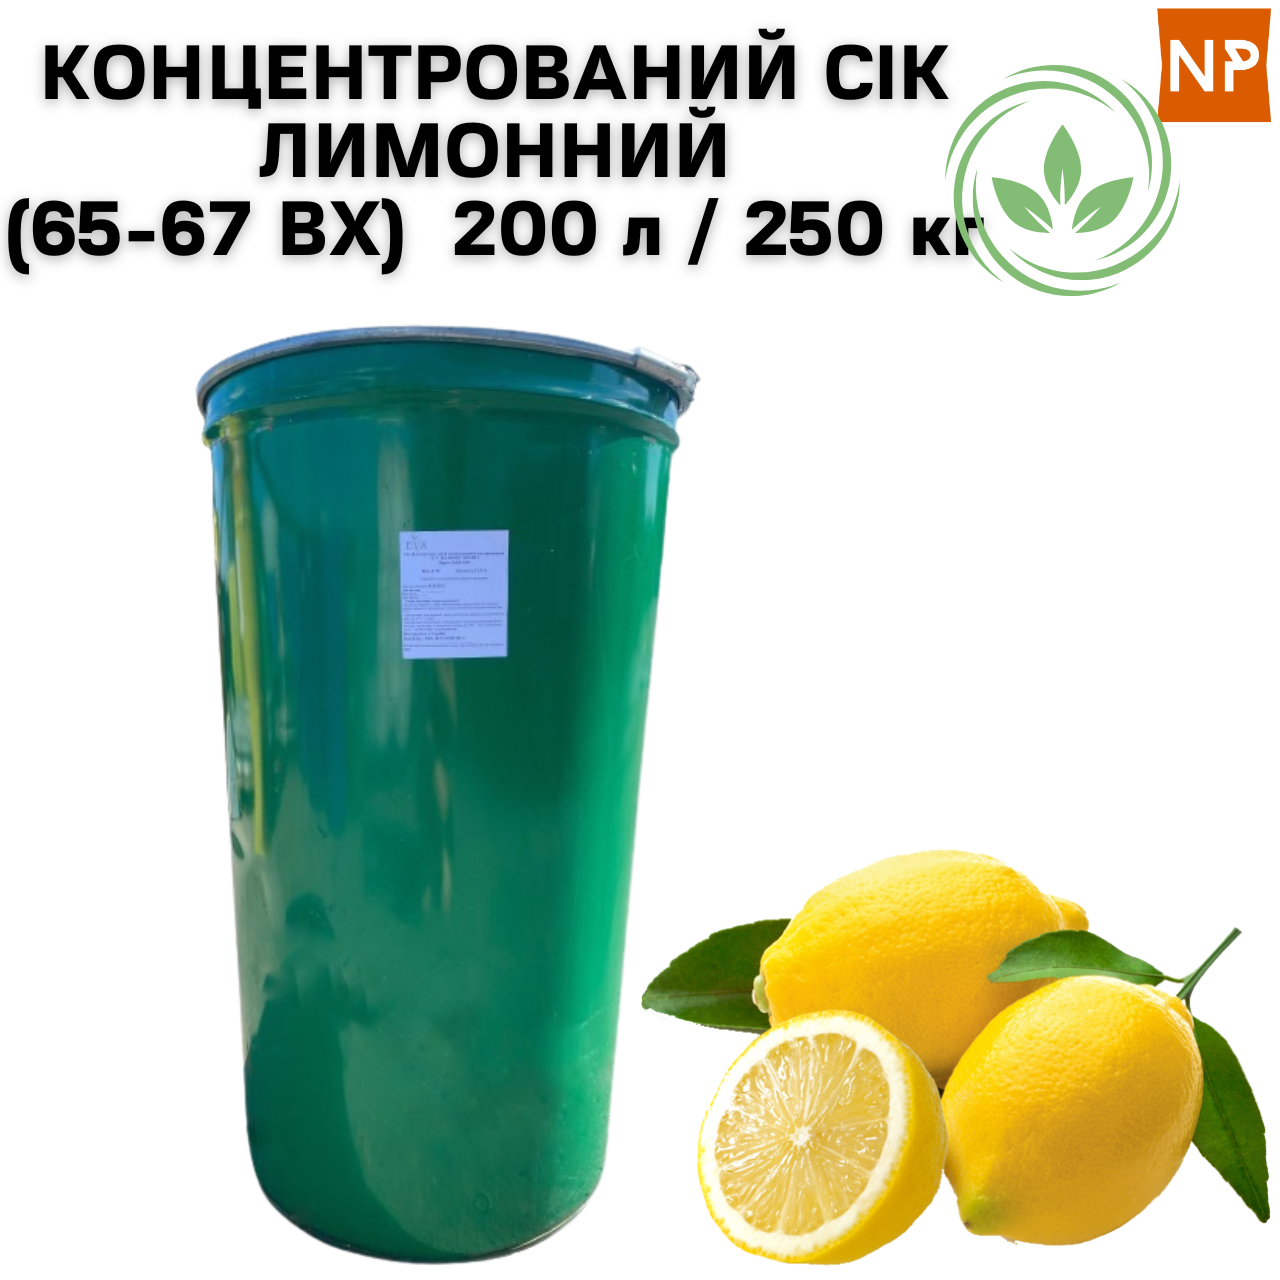 Сік лимонний концентрований Eva неосвітлений з м'якоттю ВХ 65-67 бочка 200 л/250 кг - фото 2